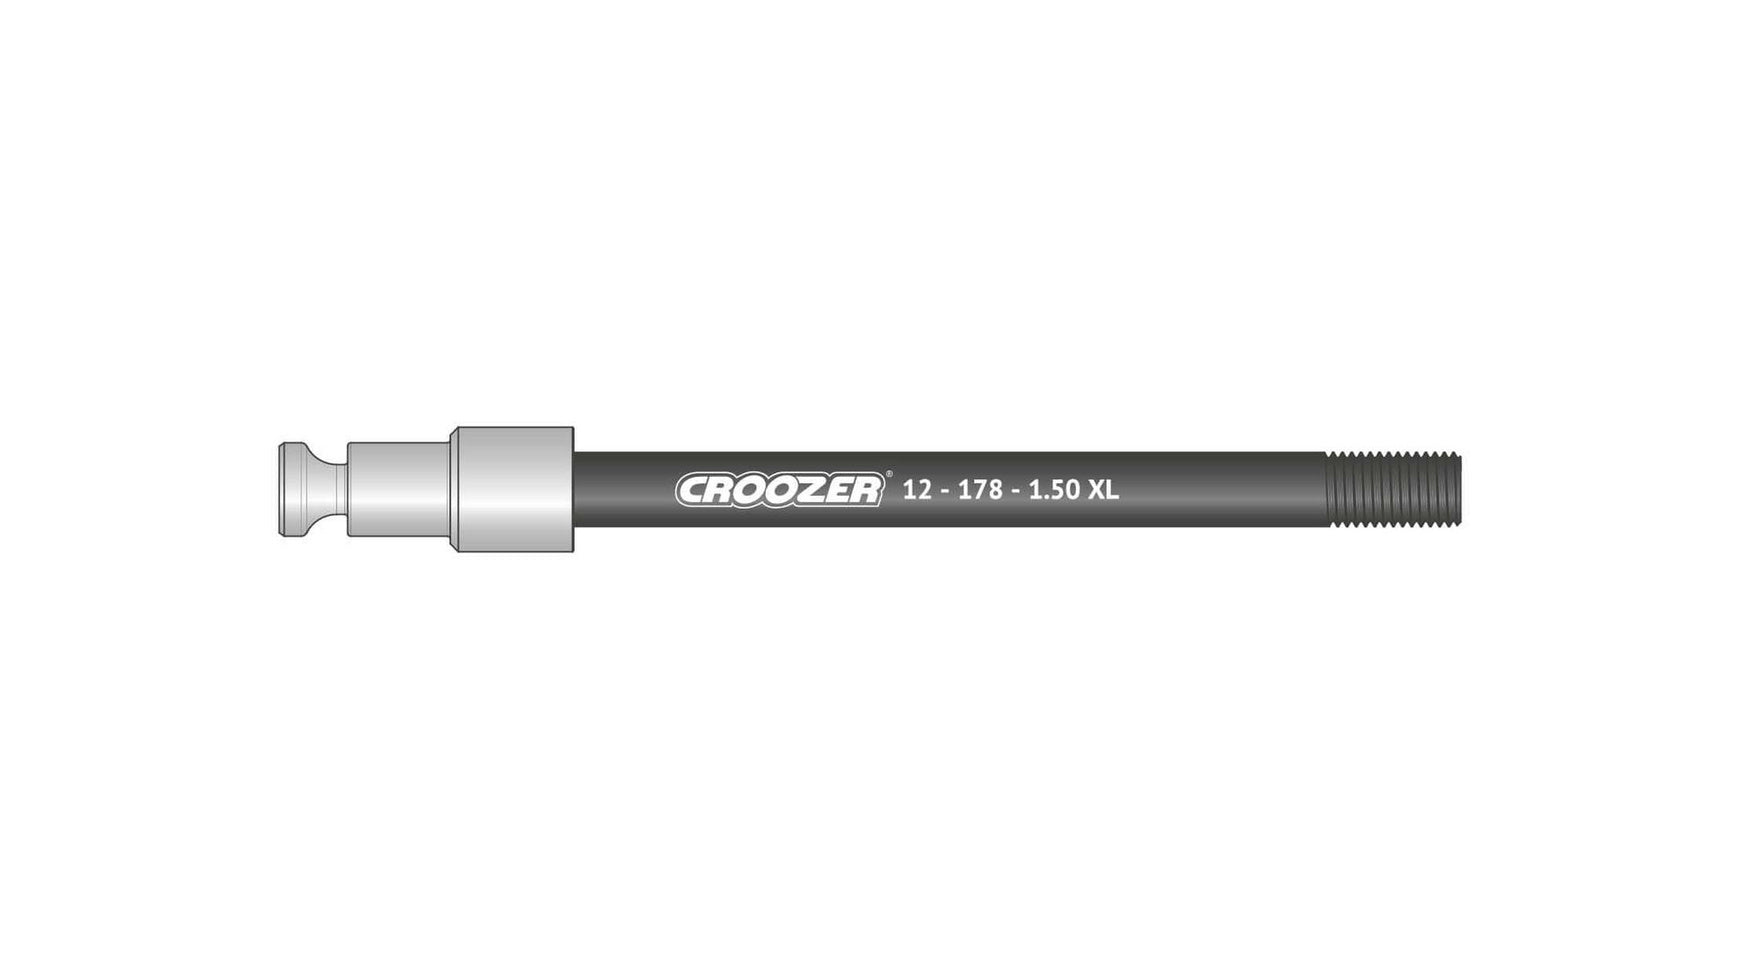 Croozer 12-178-1.50 XL von CROOZER